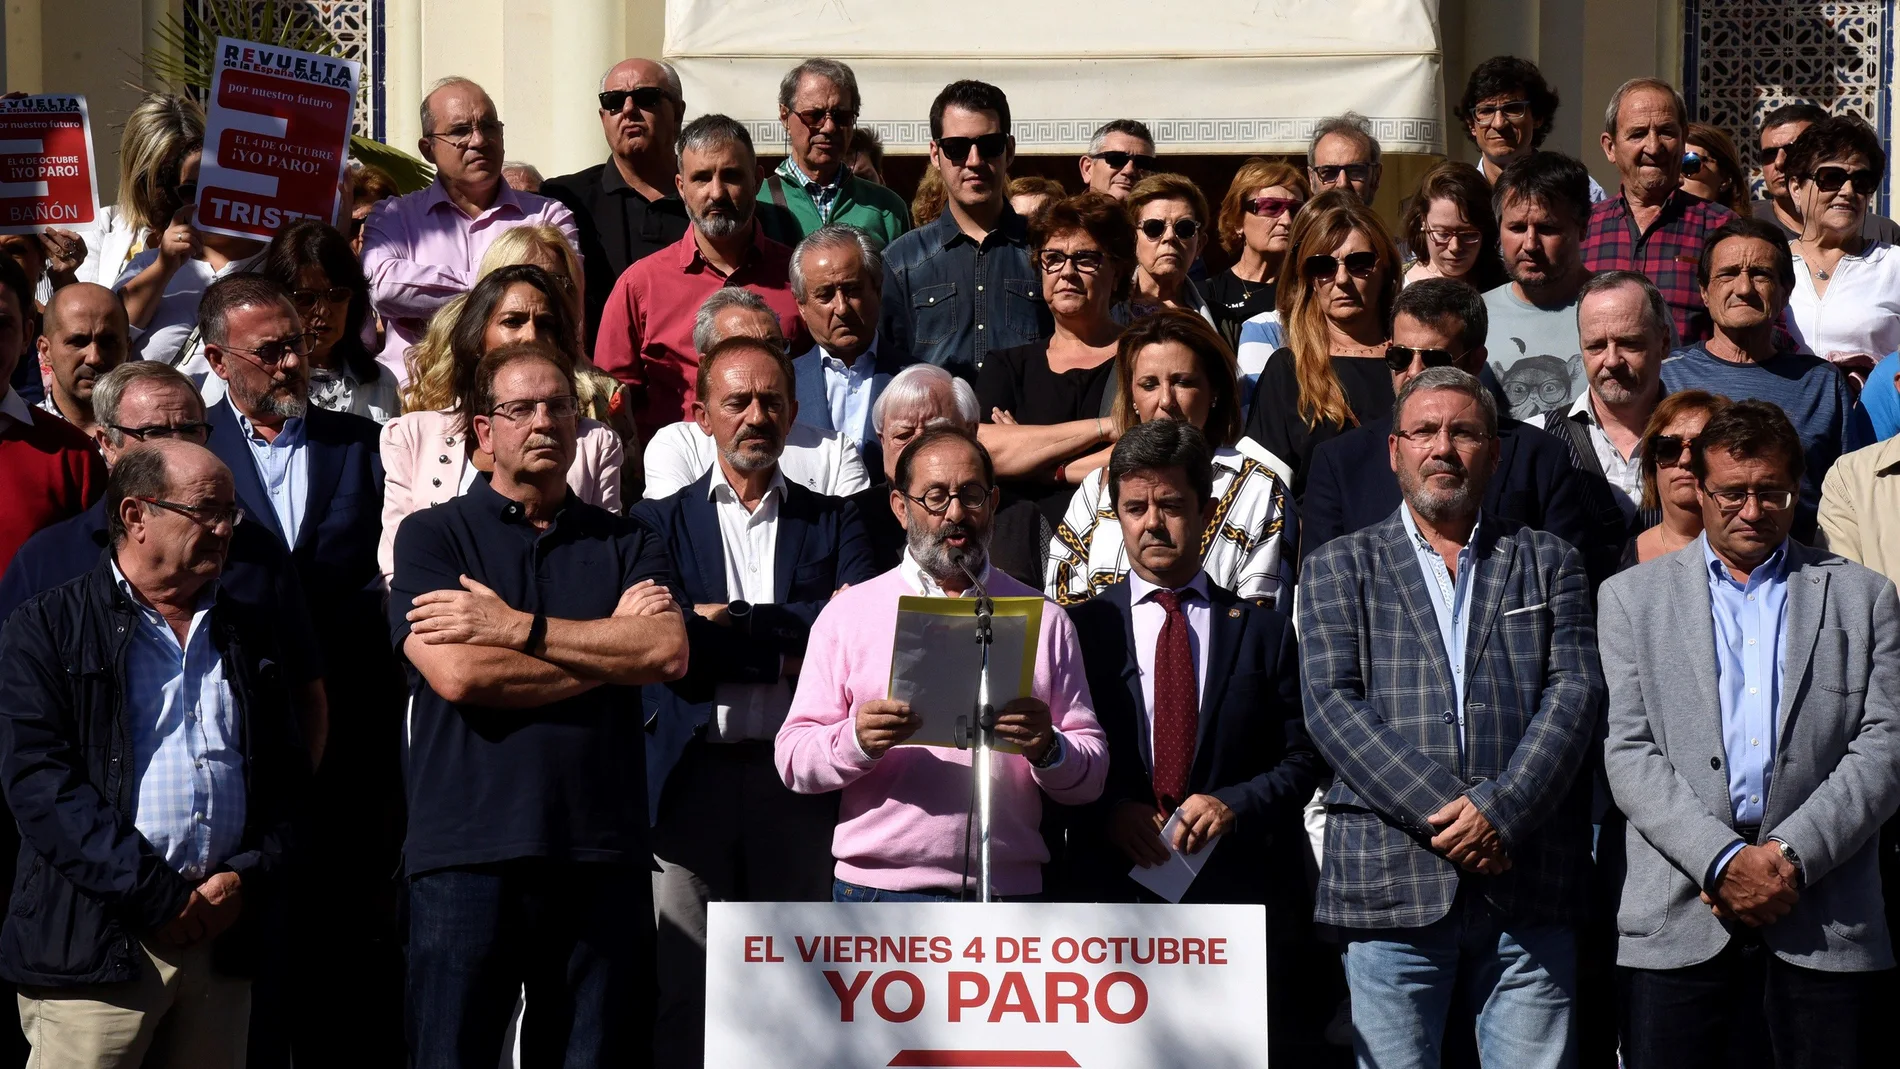 España vaciada: lectura del manifiesto tras el paro en Huesca